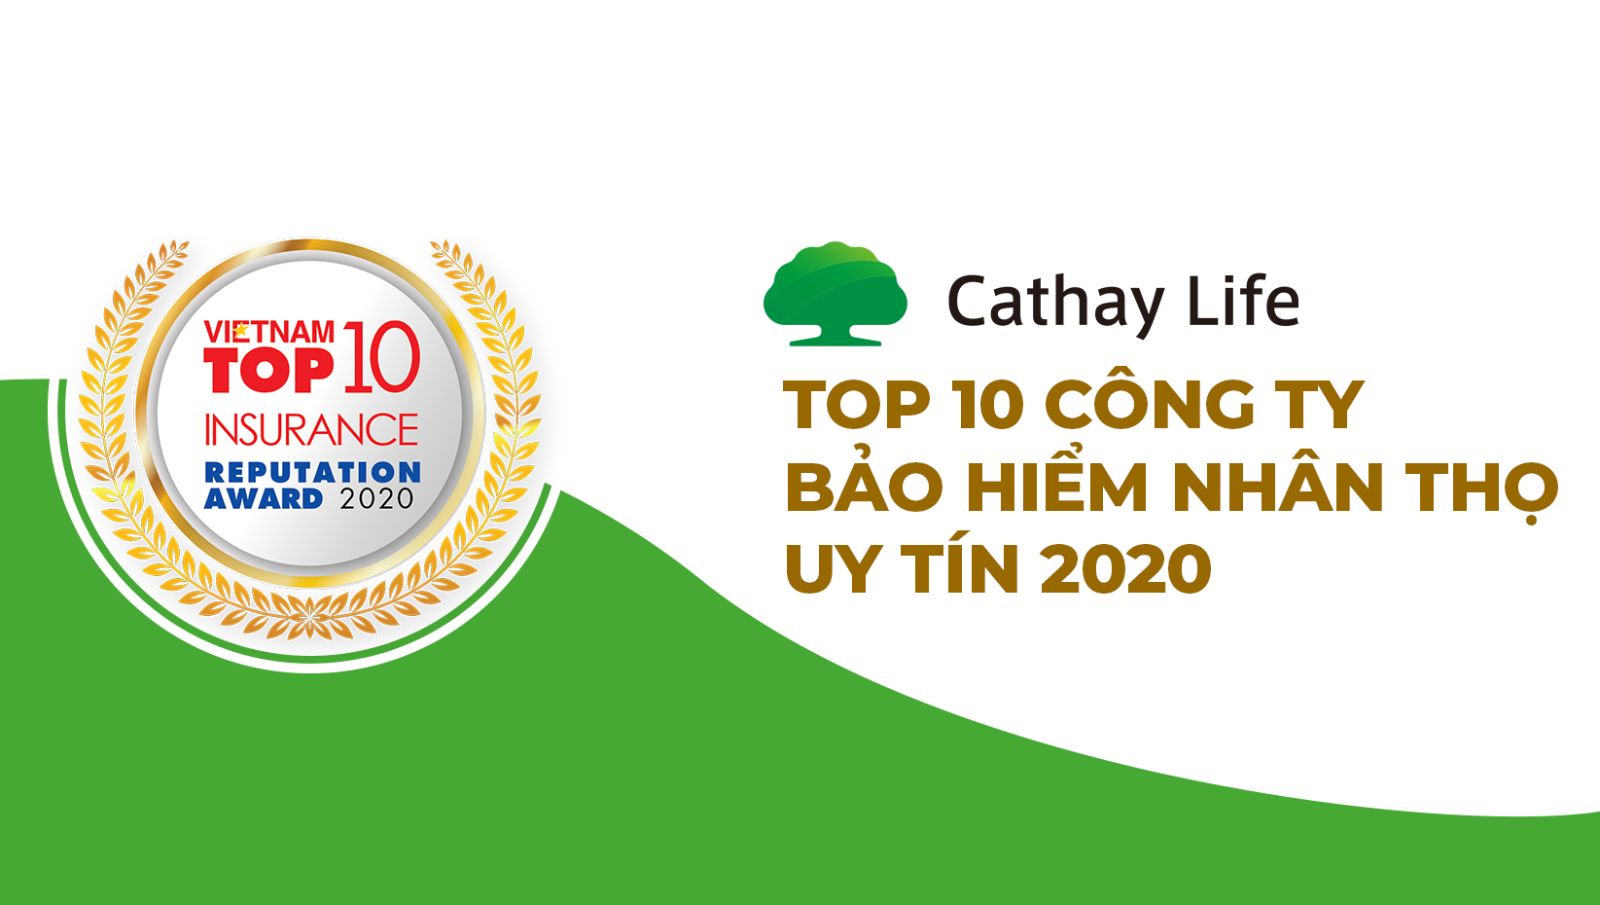 Công Ty TNHH Bảo Hiểm Nhân Thọ Cathay Life Việt Nam